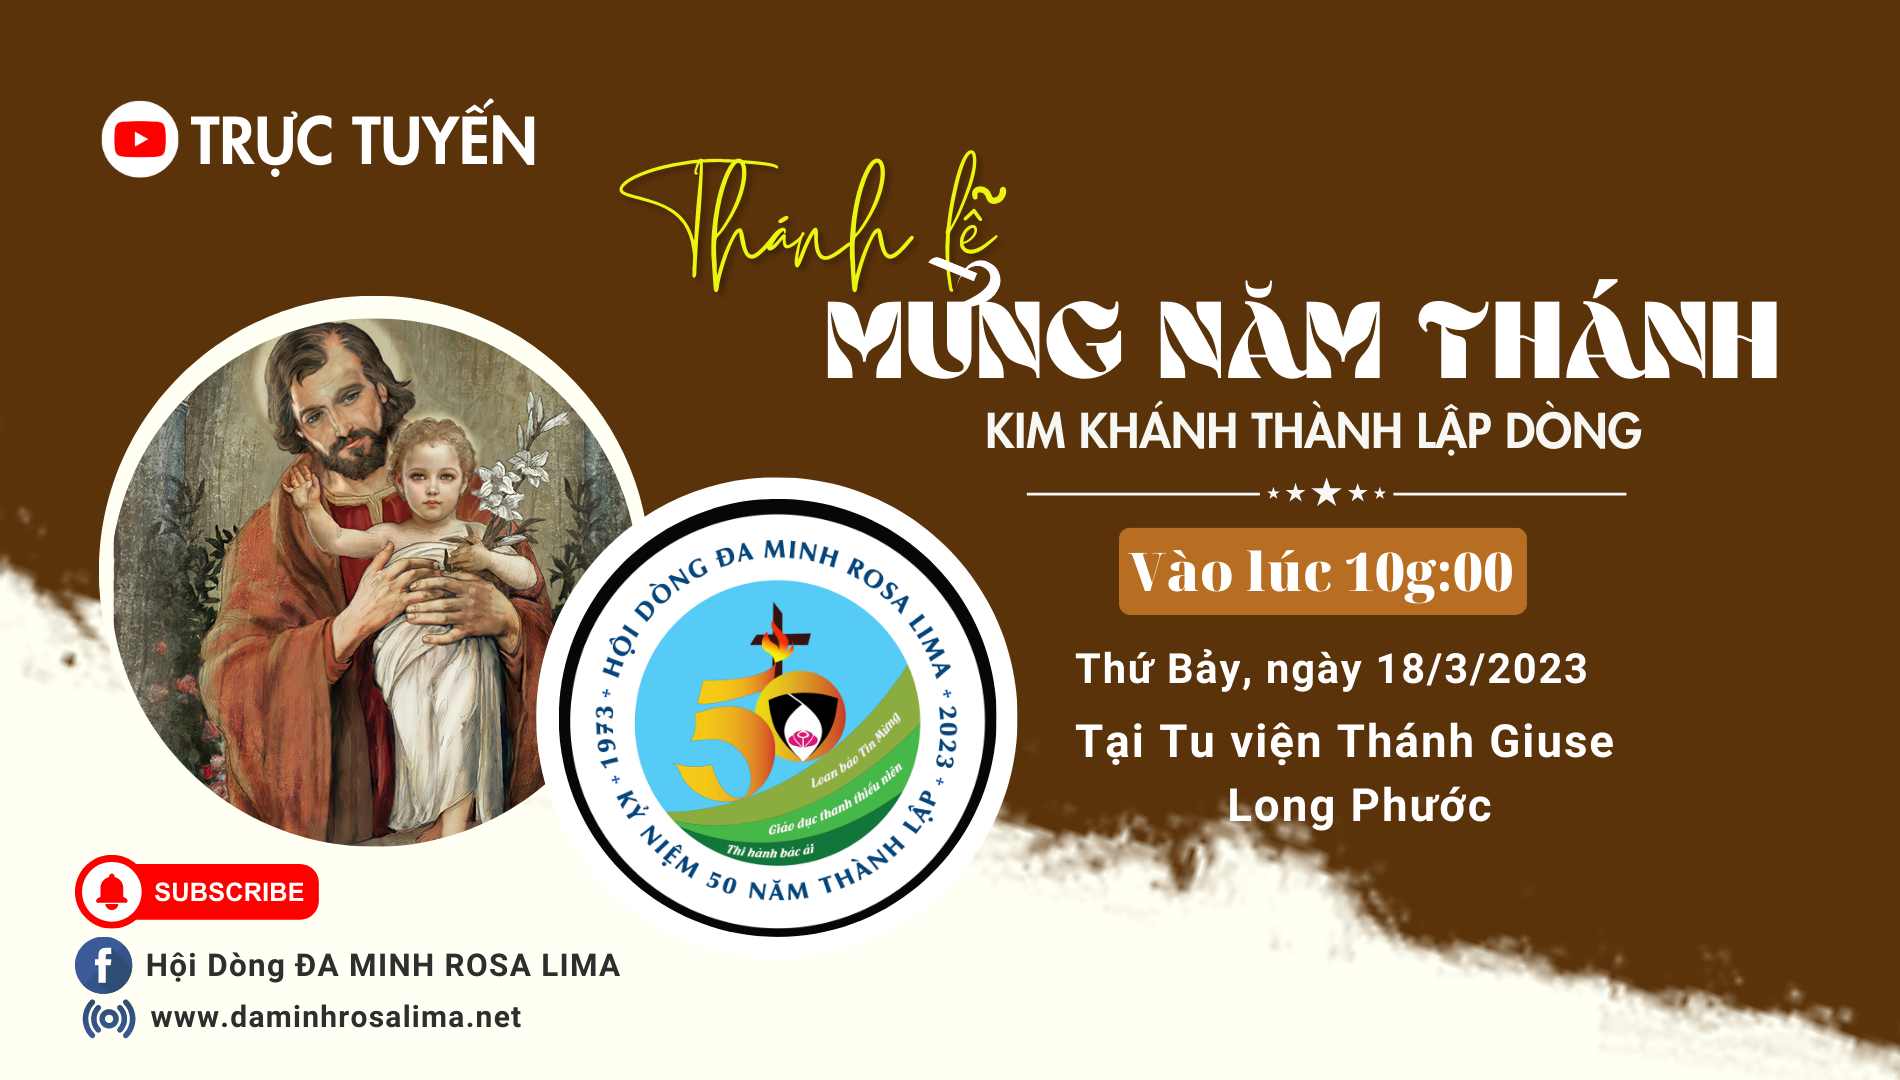 Trực tuyến:  Thánh lễ mừng Năm Thánh tại Tu viện Thánh Giuse Long Phước